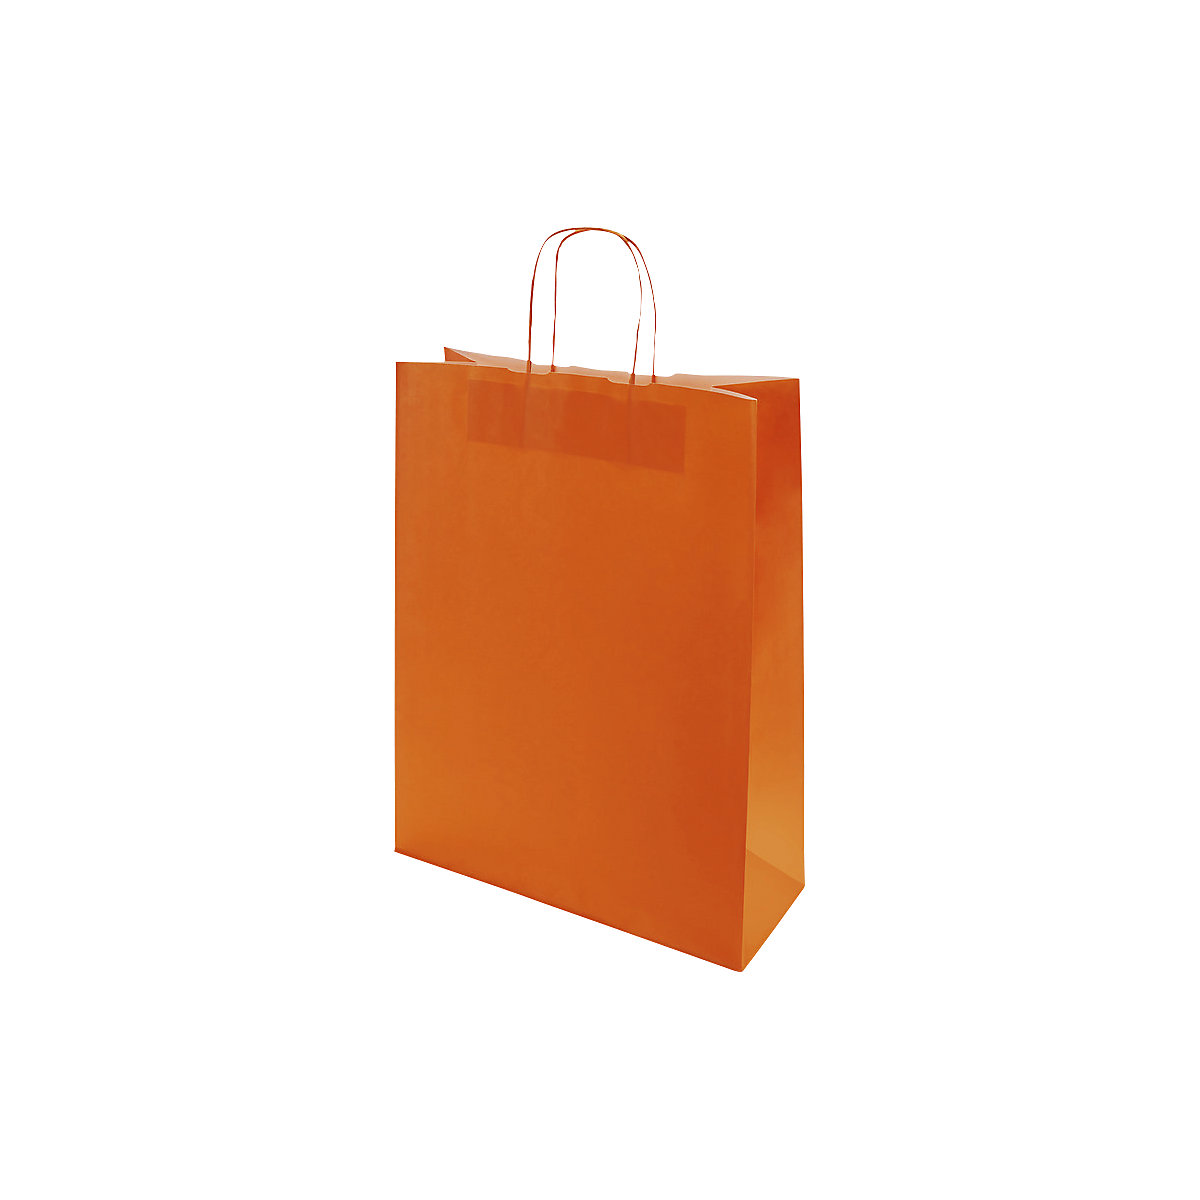 Papiertragetasche FRESH, orange, LxBxH 320 x 130 x 425 mm, 100 g/m², VE 250 Stk, ab 10 VE-2